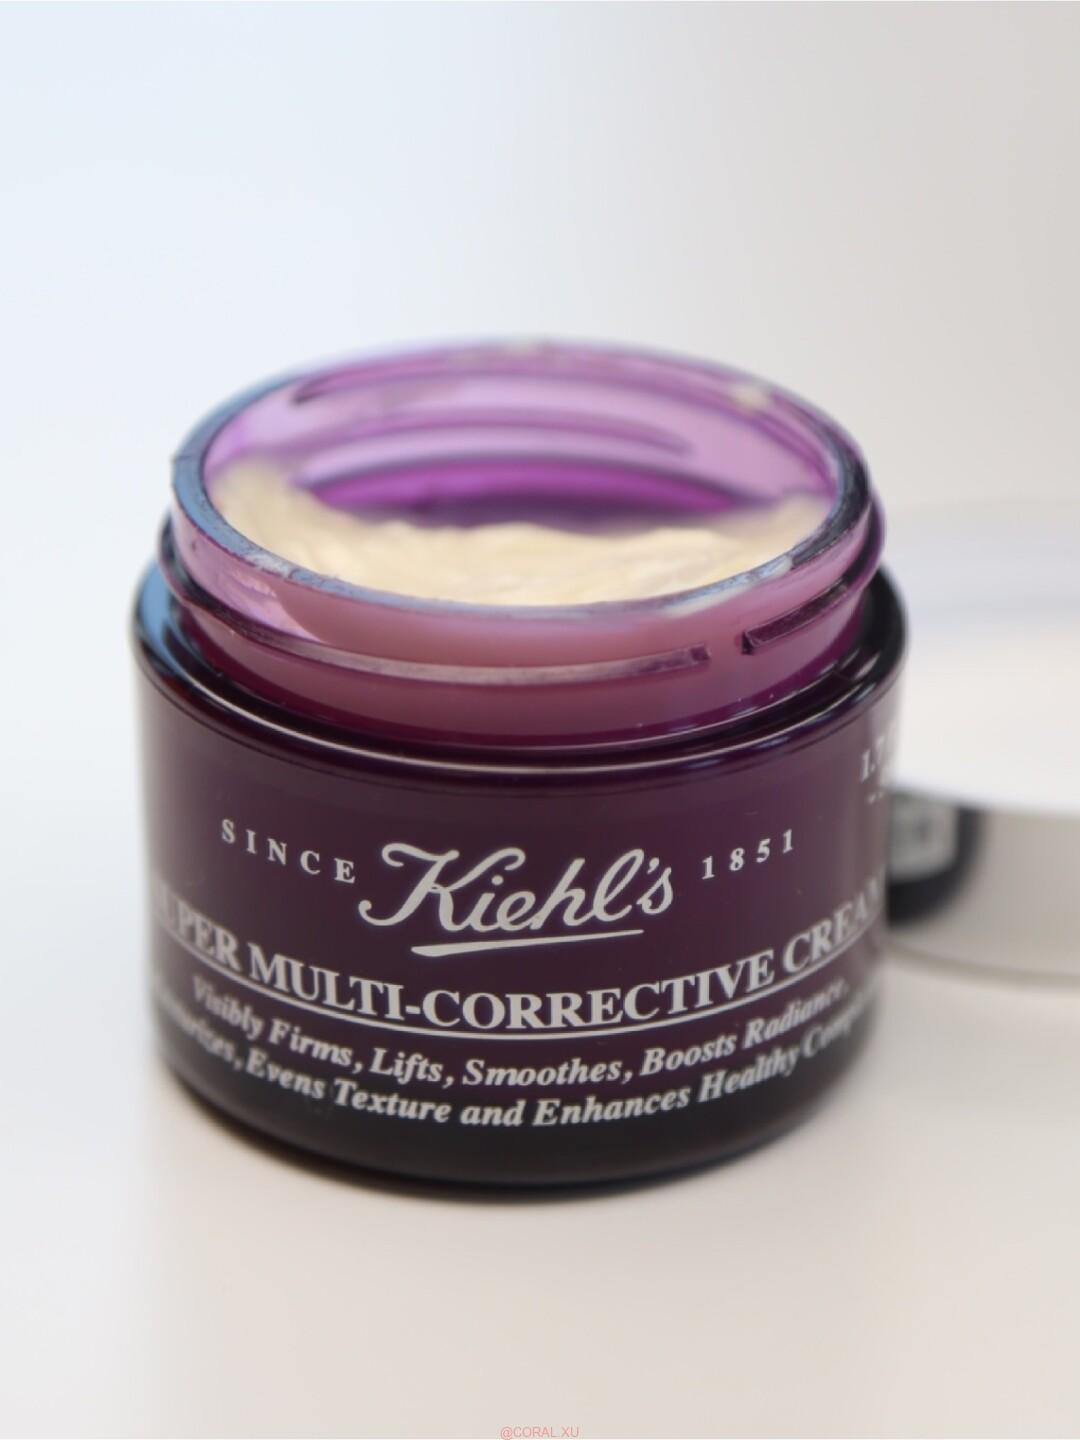 Kiehls Super Multi Corrective Cream SPF 30 Review 2 - Kiehl’s Super Multi-Corrective Cream SPF 30 Review